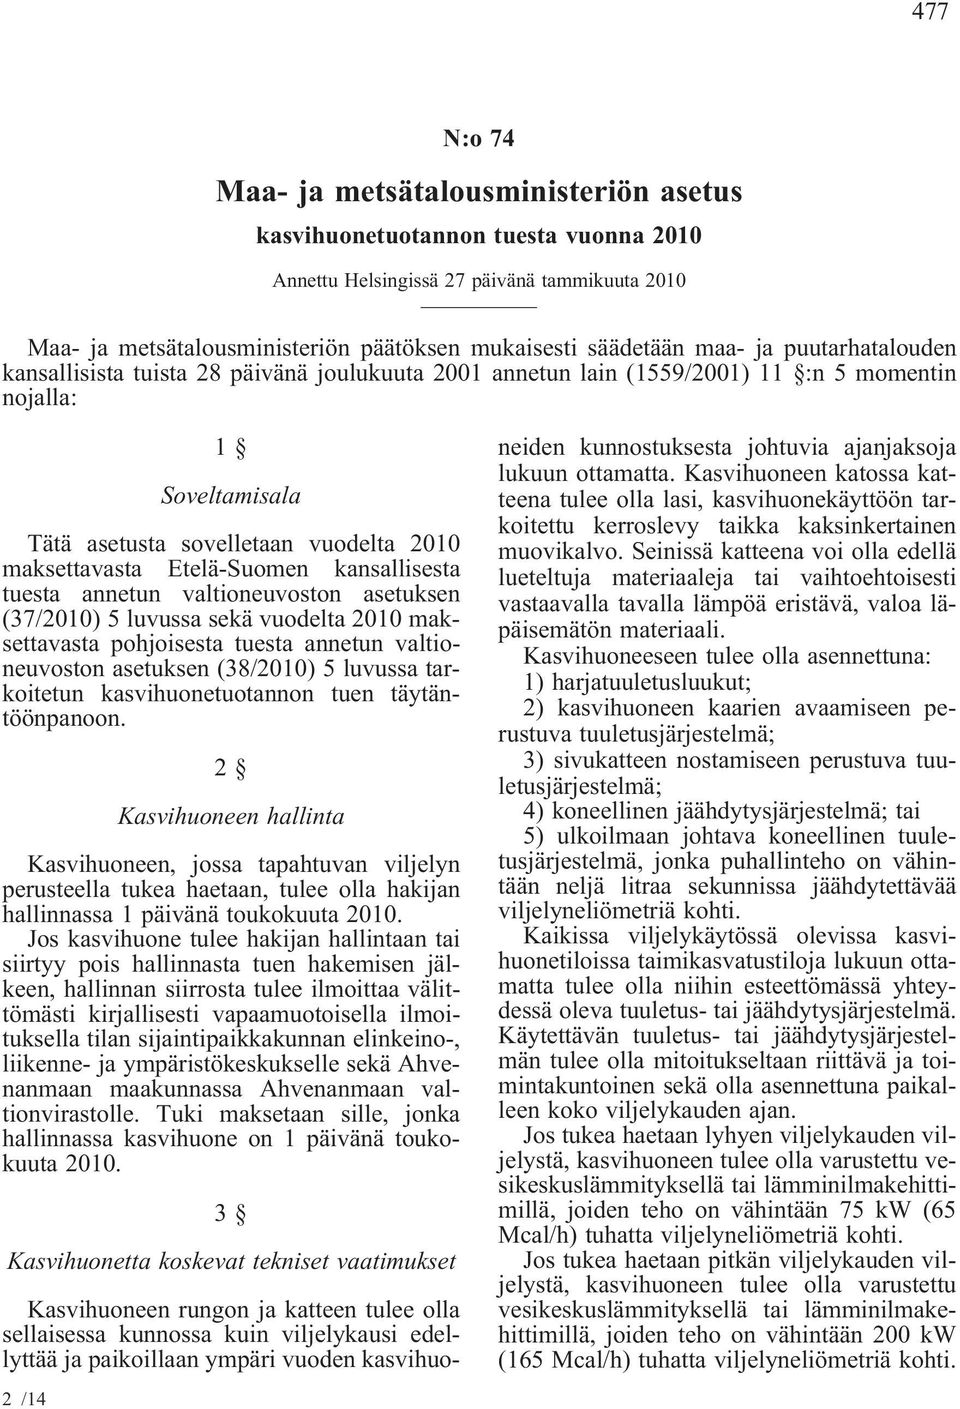 Etelä-Suomen kansallisesta tuesta annetun valtioneuvoston asetuksen (37/2010) 5 luvussa sekä vuodelta 2010 maksettavasta pohjoisesta tuesta annetun valtioneuvoston asetuksen(38/2010) 5 luvussa